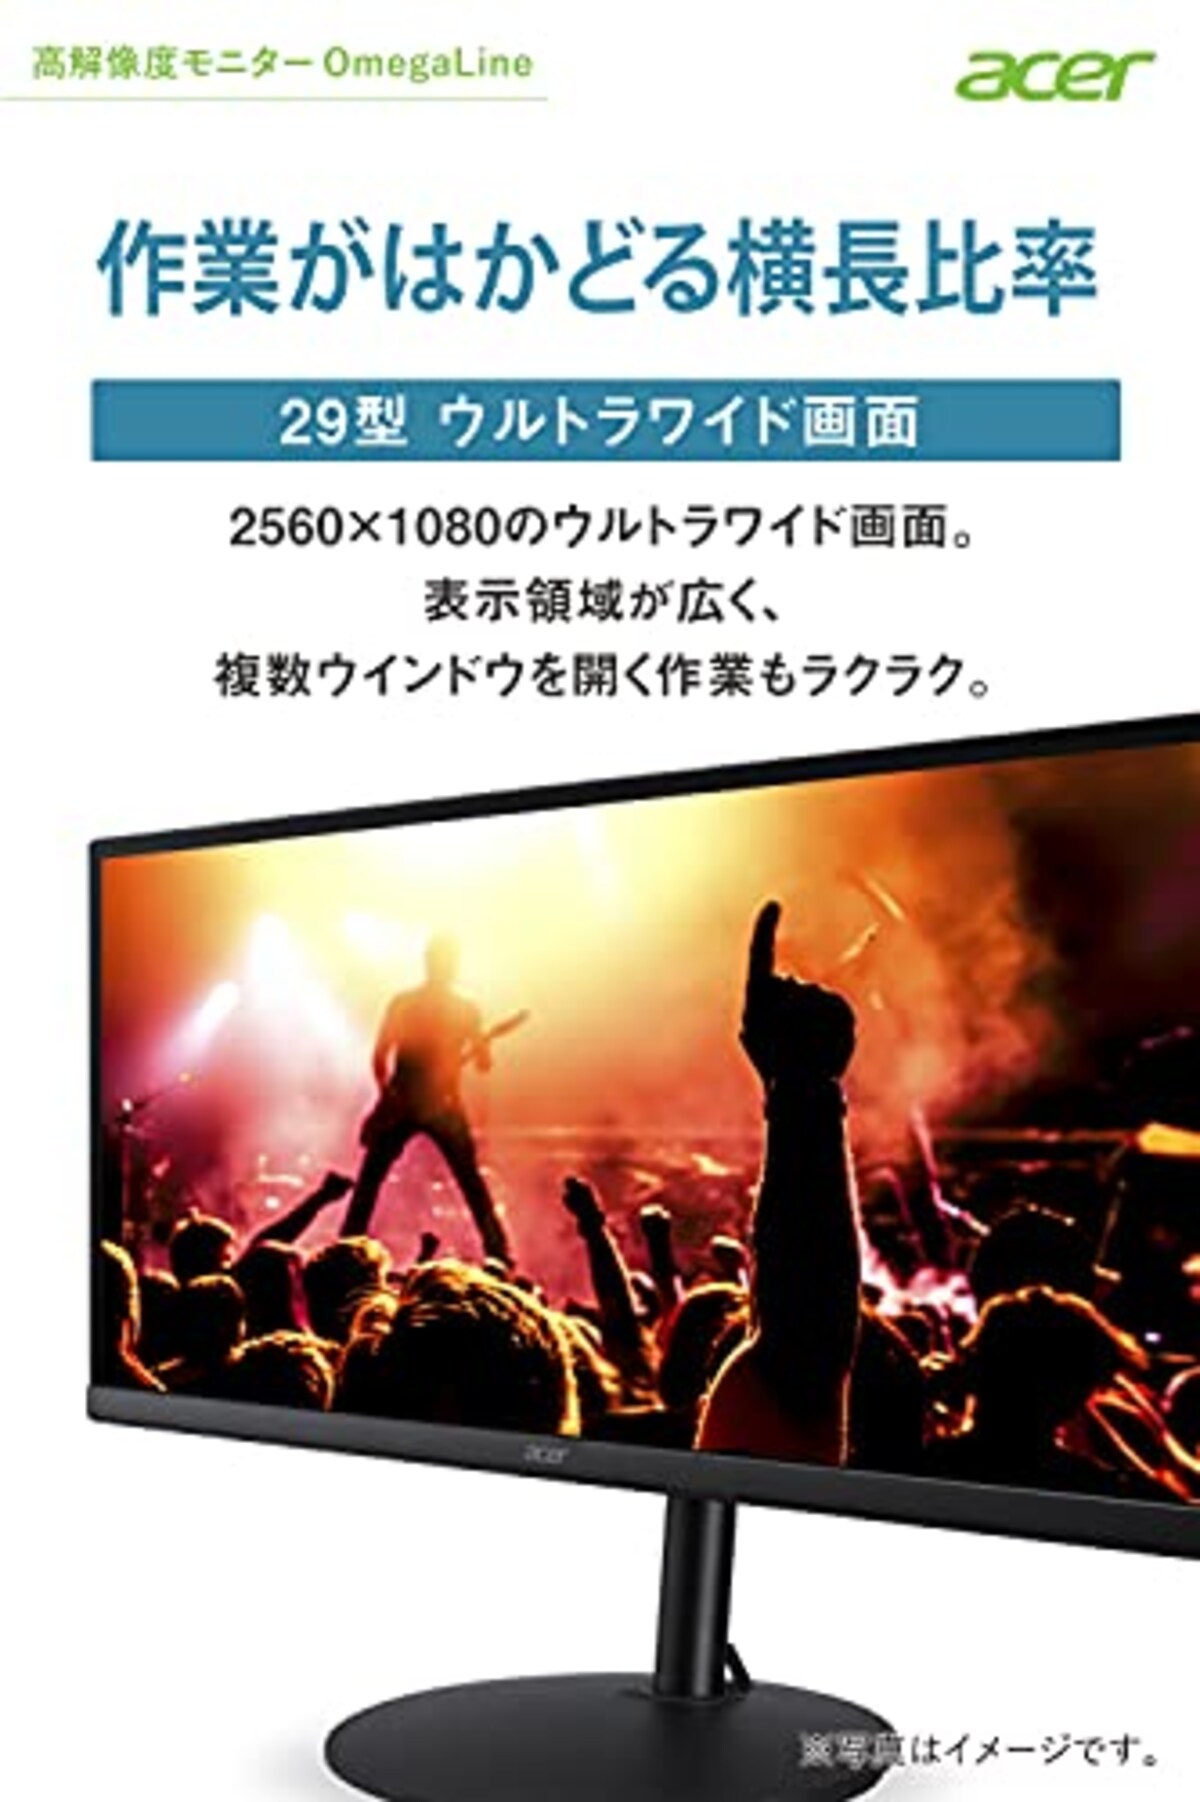  日本エイサー Acer ウルトラワイドモニター CB292CUbmiiprx 29インチ IPS 非光沢 UWFHD 1ms(VRB) 75Hz HDMI FreeSync スピーカー搭載 VESAマウント対応(100mm x 100mm)高さ調整 スイベル チルト フリッカーレス ブルーライト軽減画像2 